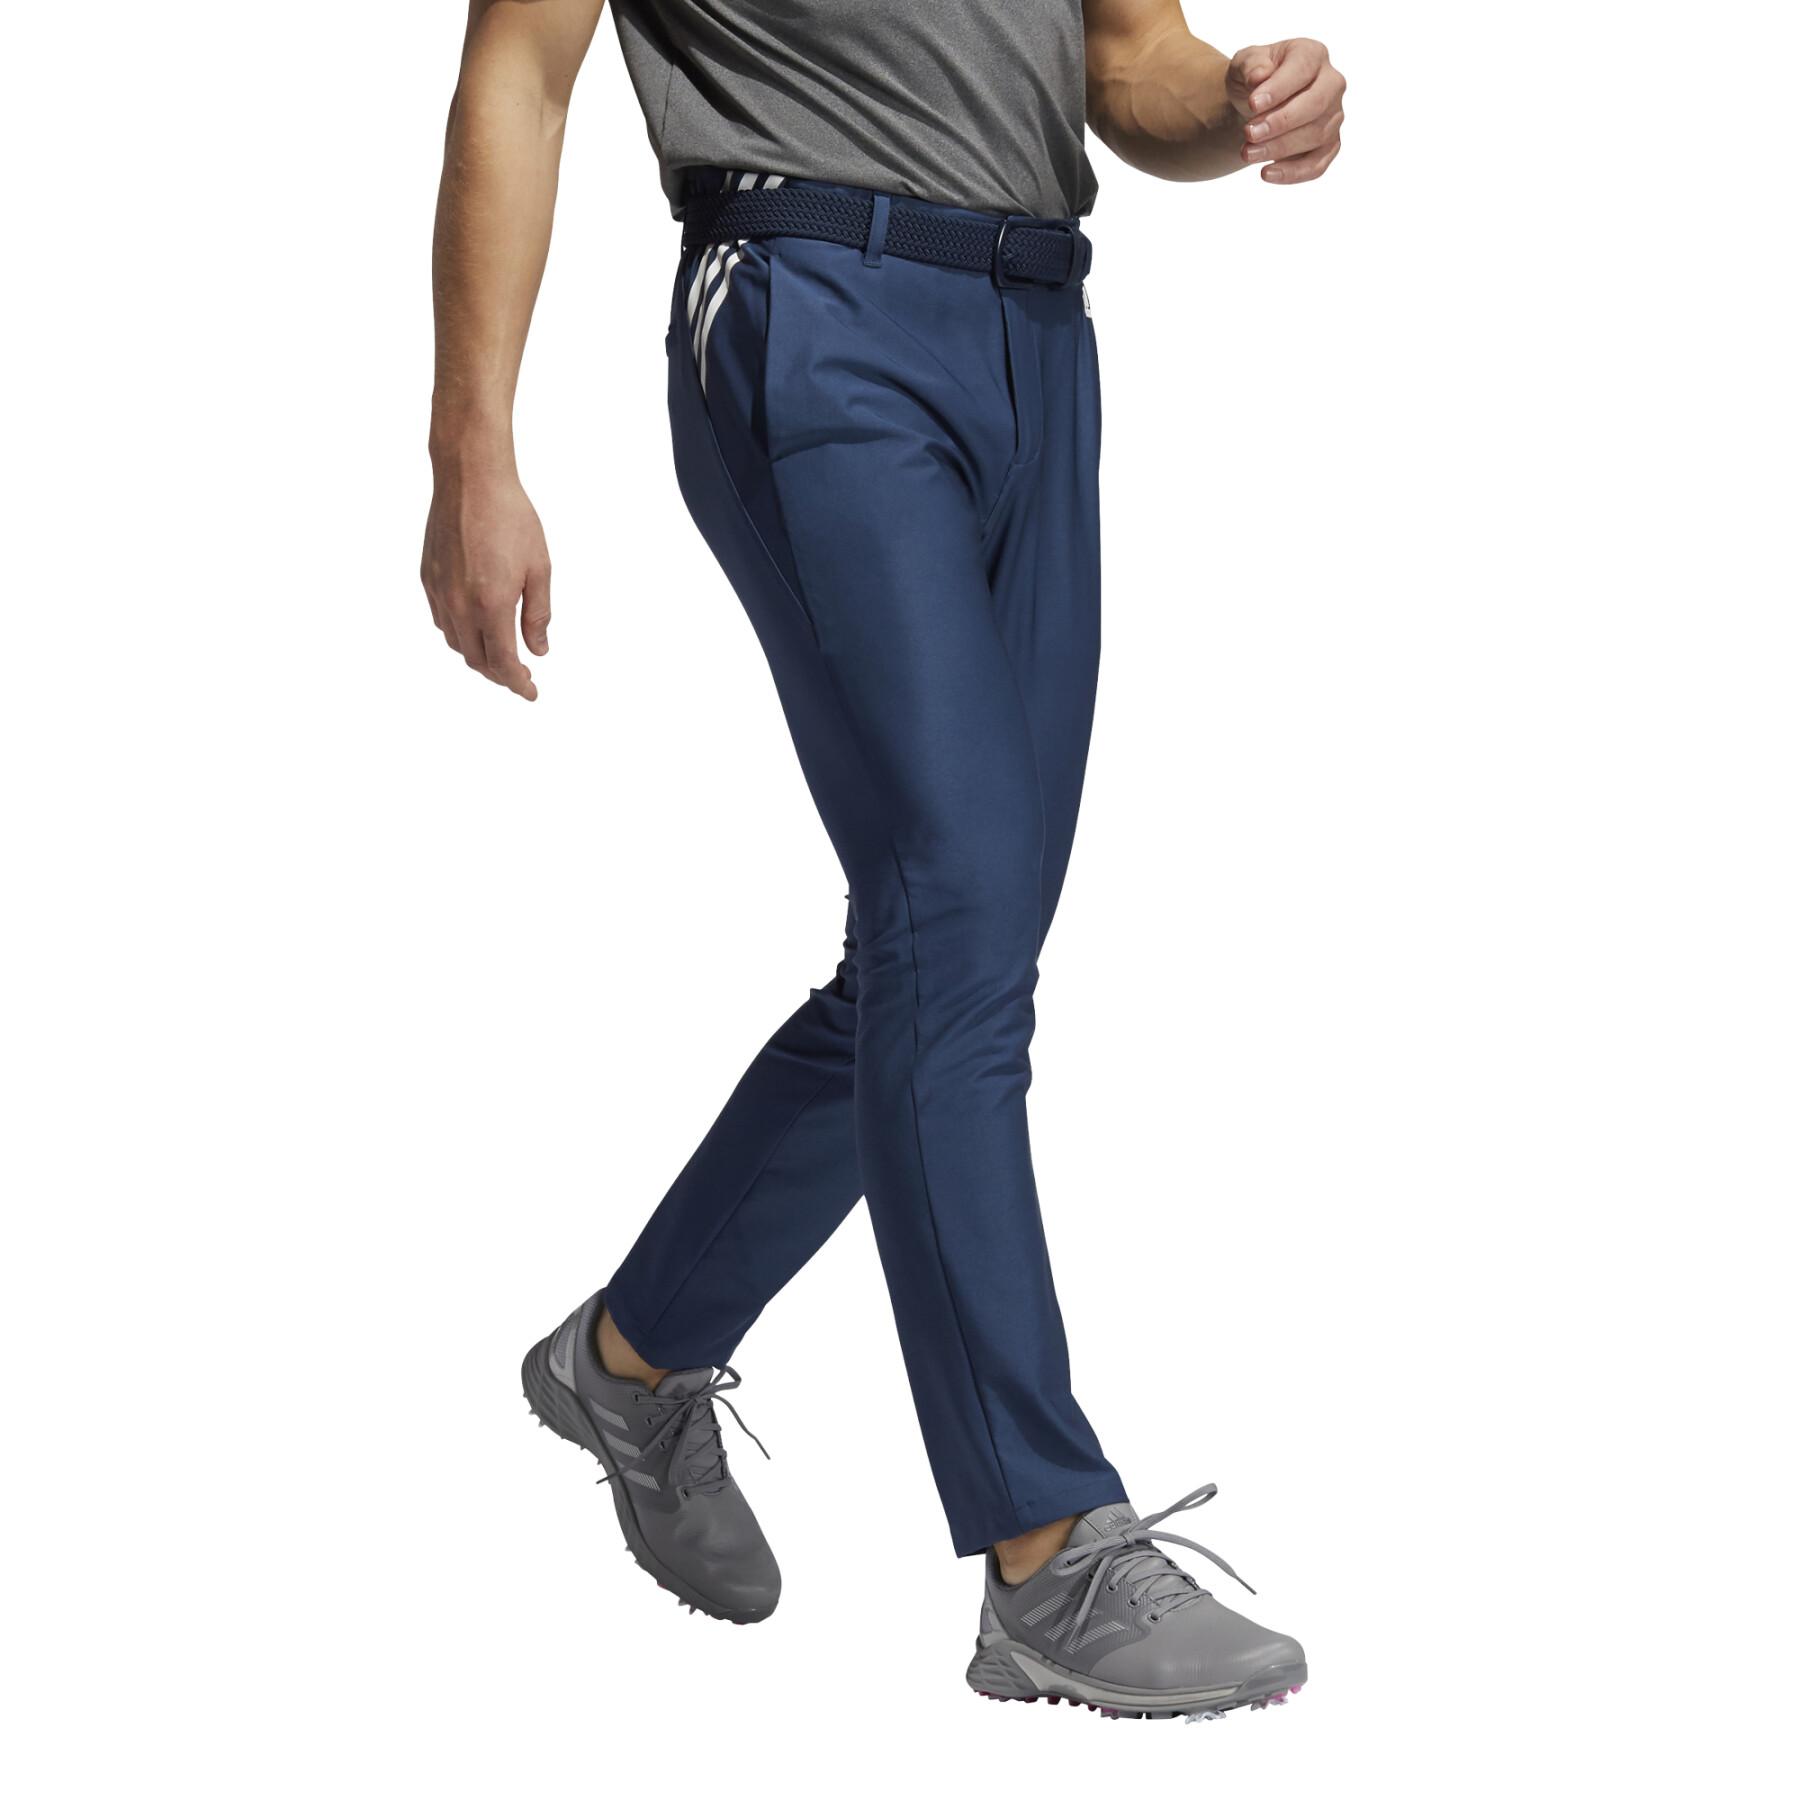 Conveniente Adulto Aparador Pantalones adidas Ultimate365 3-Stripes